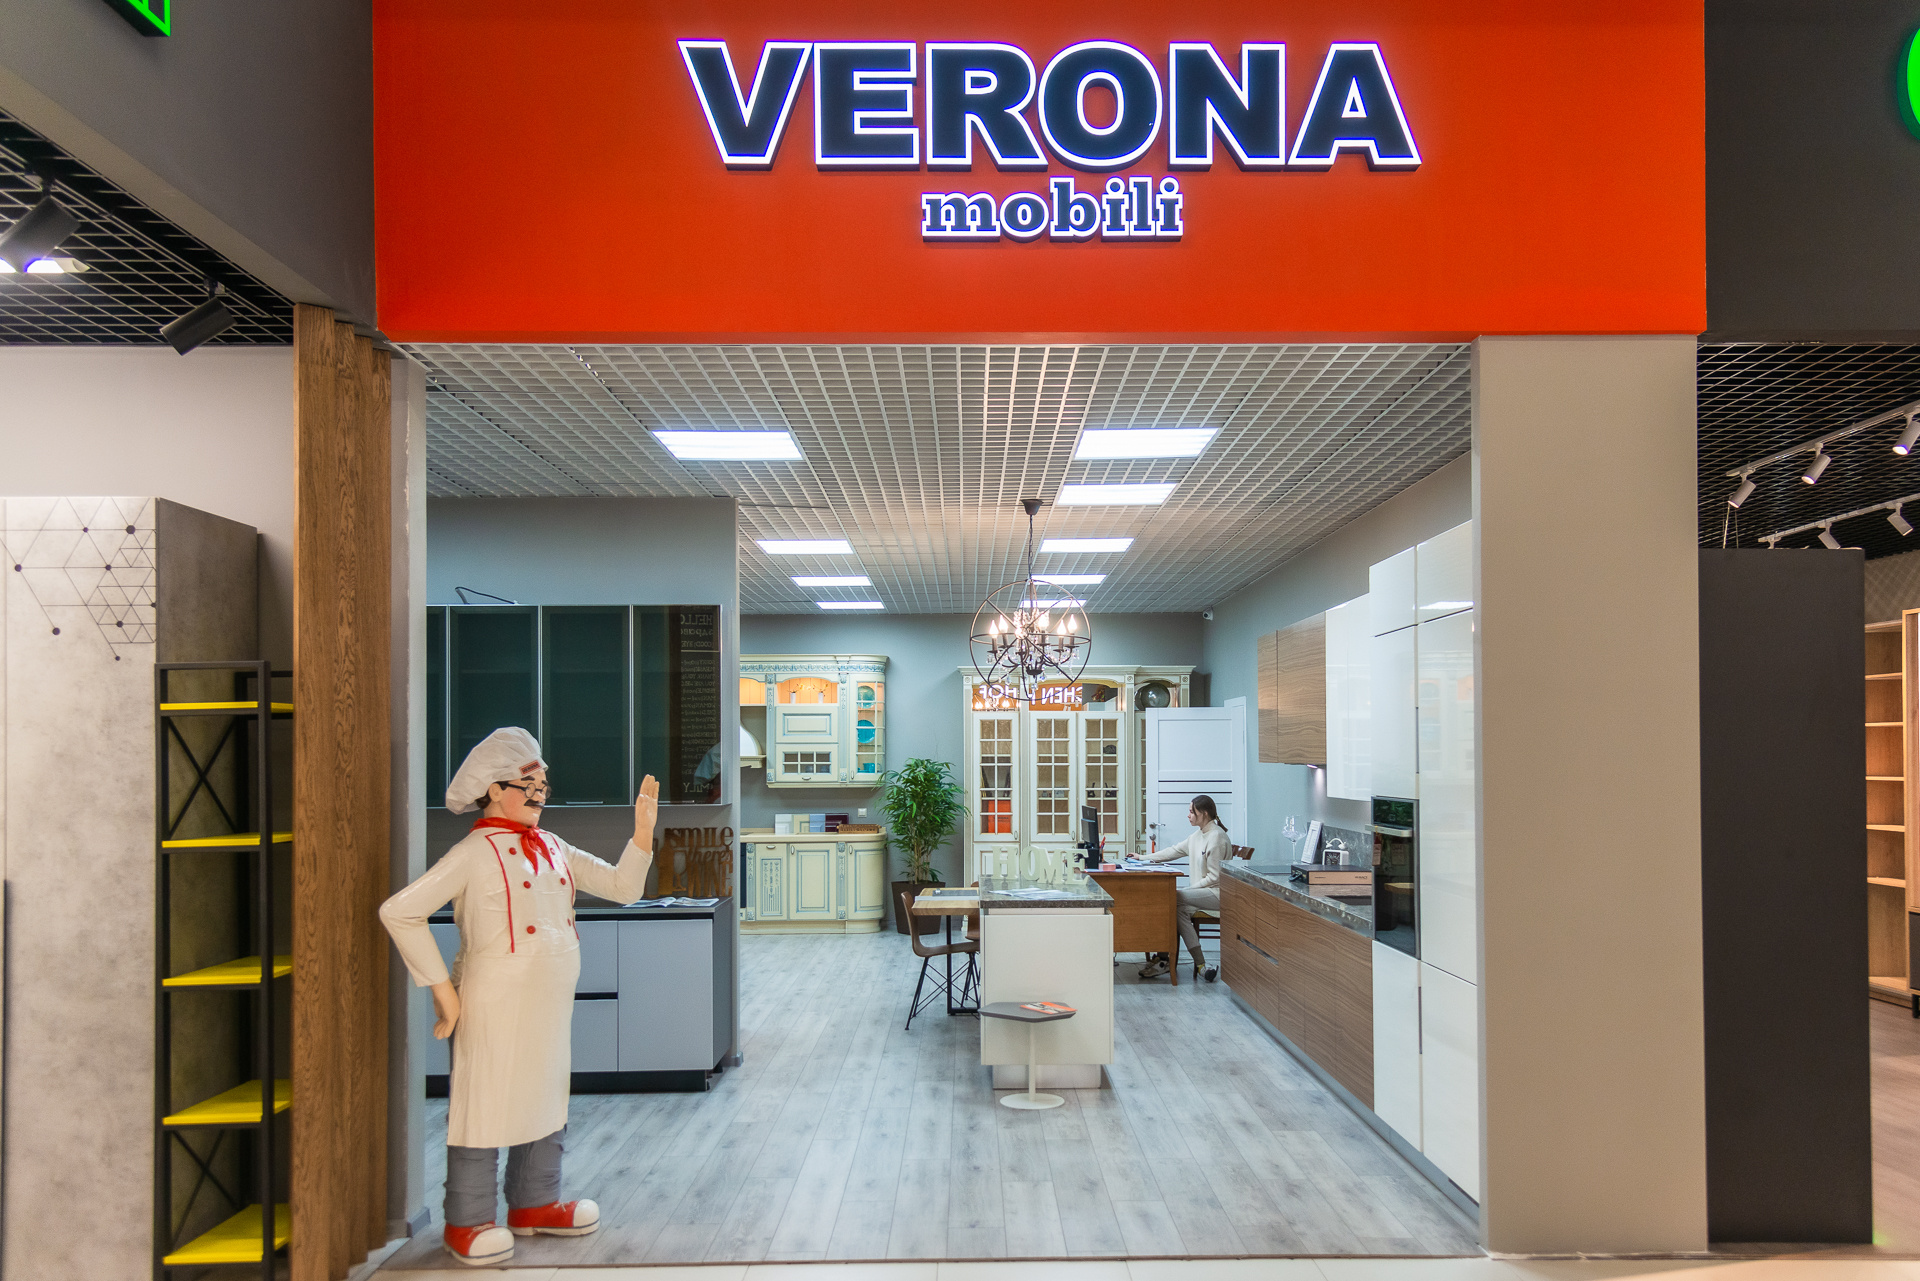 В начале года в Family Room открылся фирменный салон фабрики VERONA. Бренд специализируется на производстве мебели высокого качества. Здесь можно найти кухни, мебель для гостиных, кабинетов, столовых